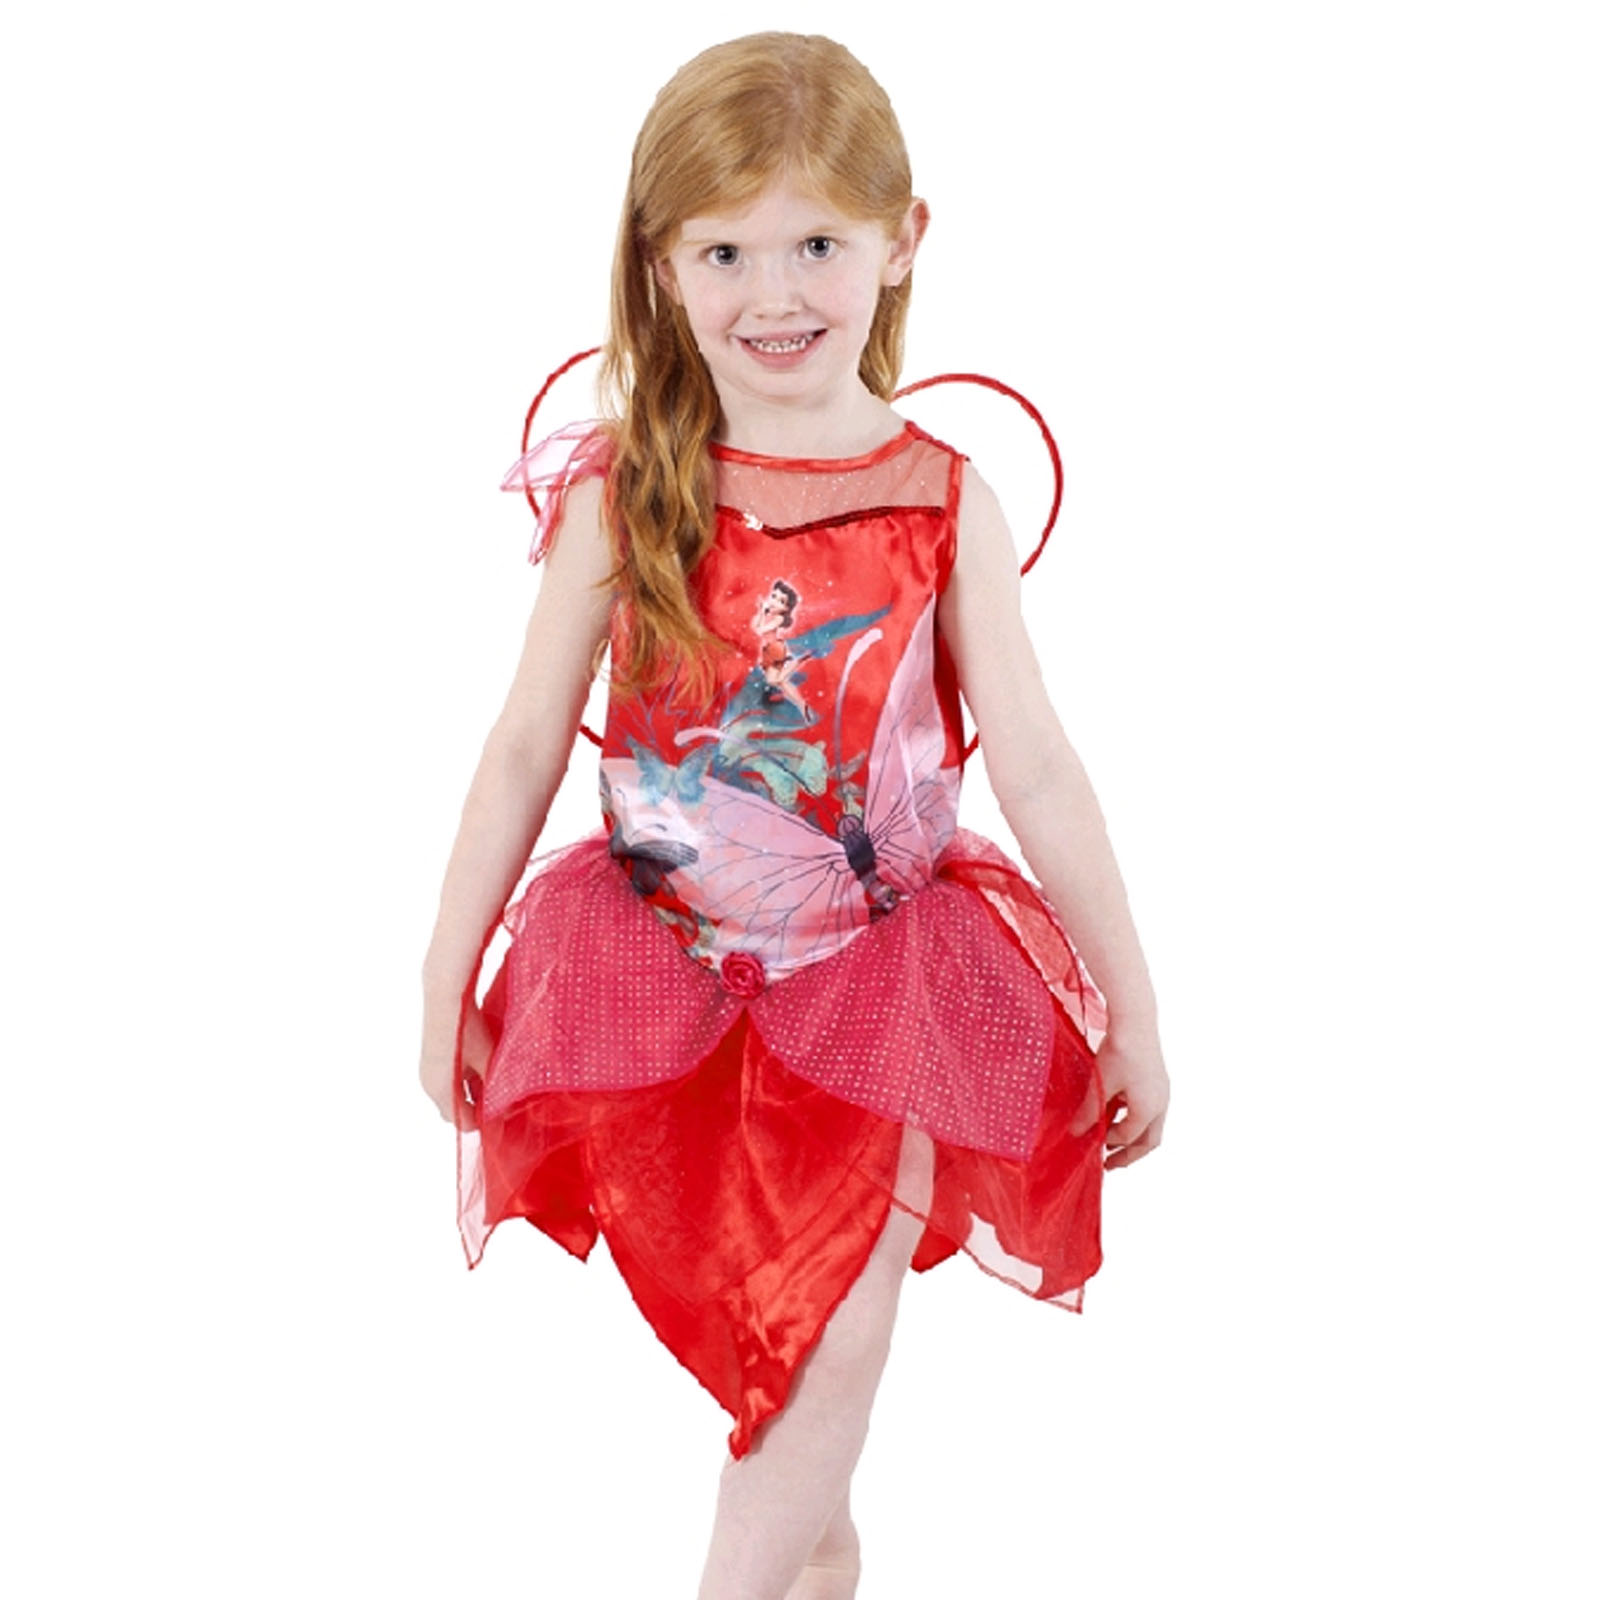 rosetta fairy costume. 